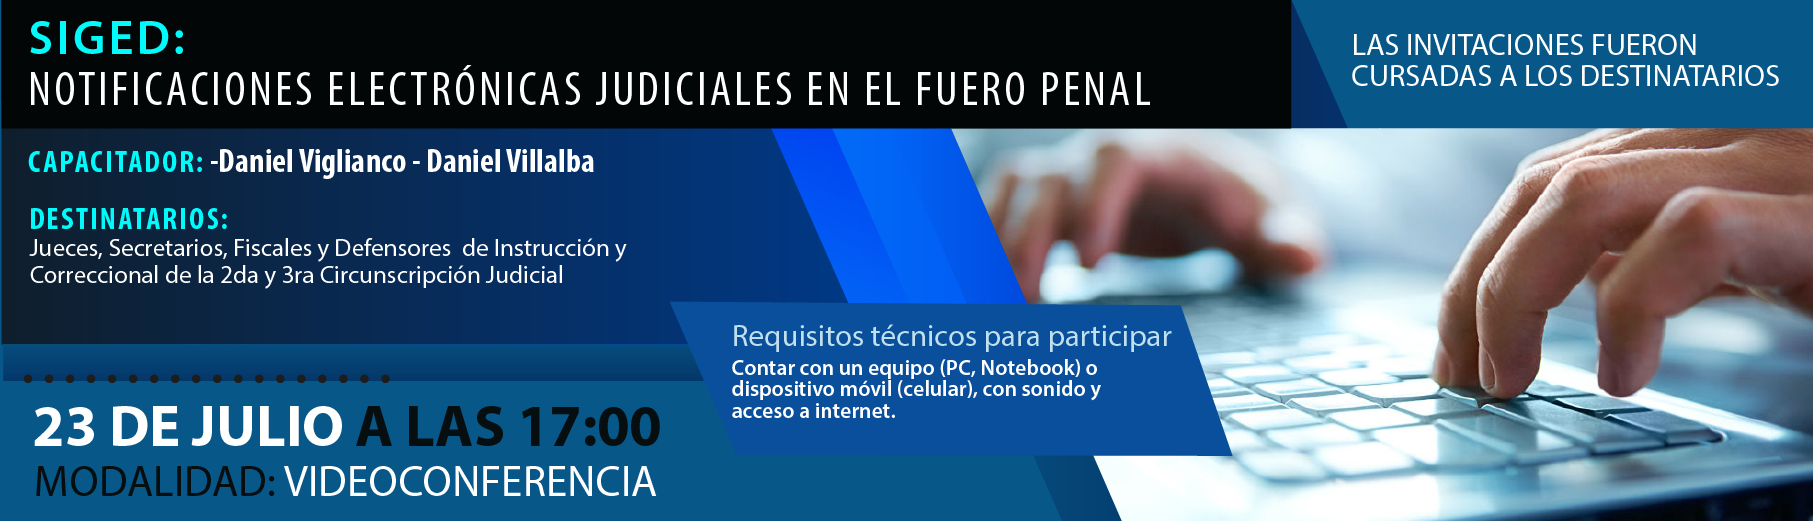 P2_sg_NOTIFICACIONES_ELECTRNICAS_JUDICIALES_EN_EL_FUERO_PENAL-01